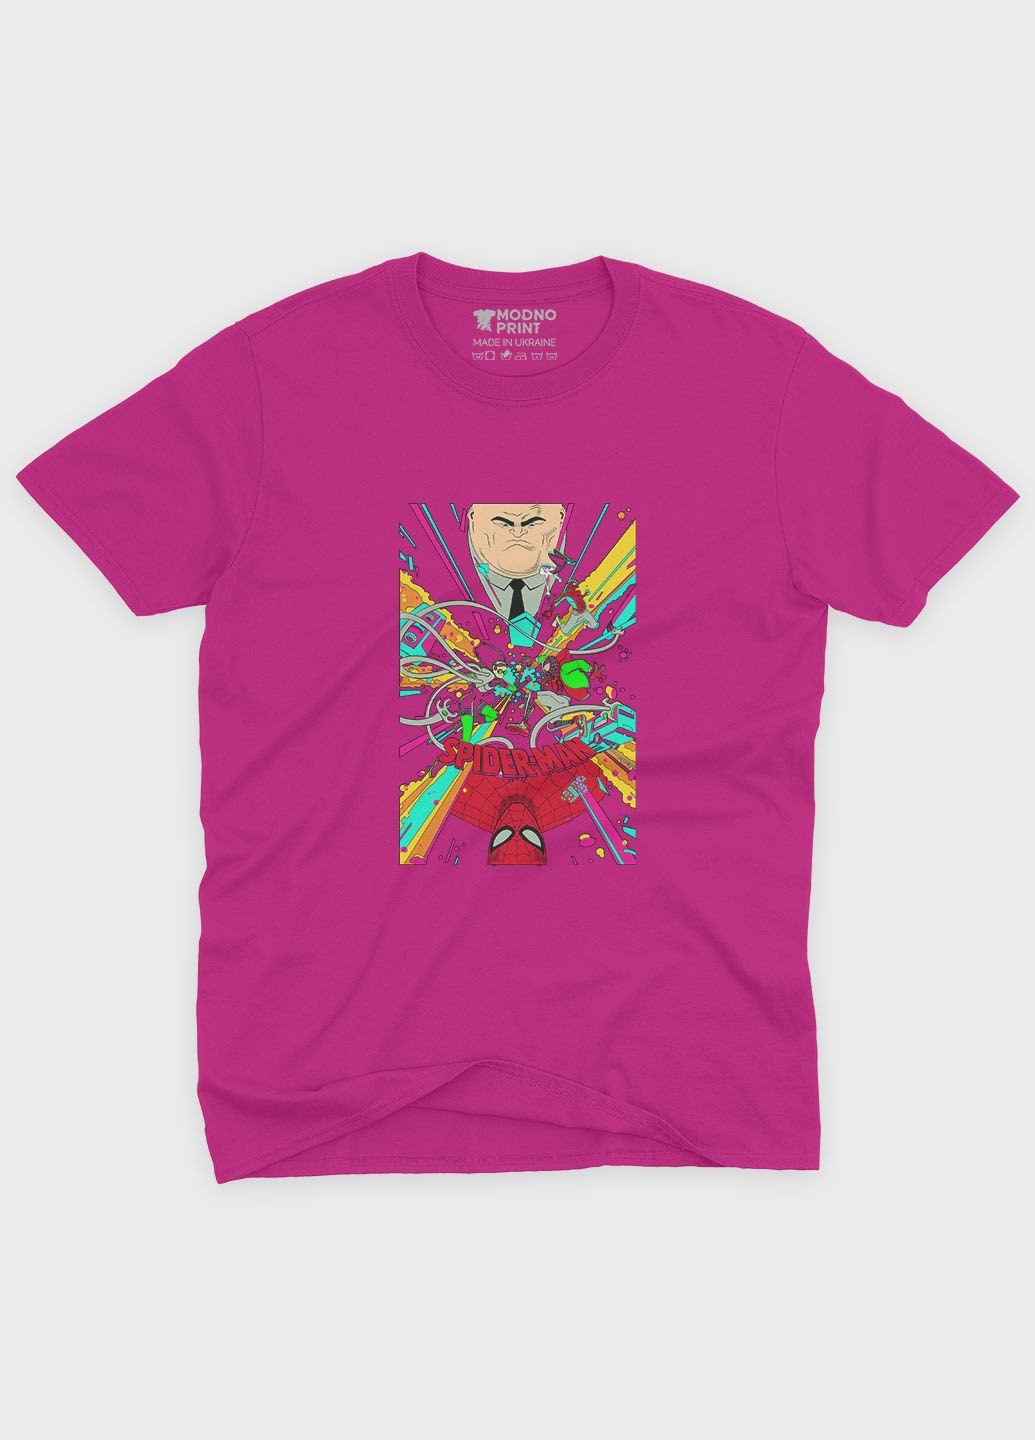 Розовая демисезонная футболка для мальчика с принтом супергероя - человек-паук (ts001-1-fuxj-006-014-022-b) Modno